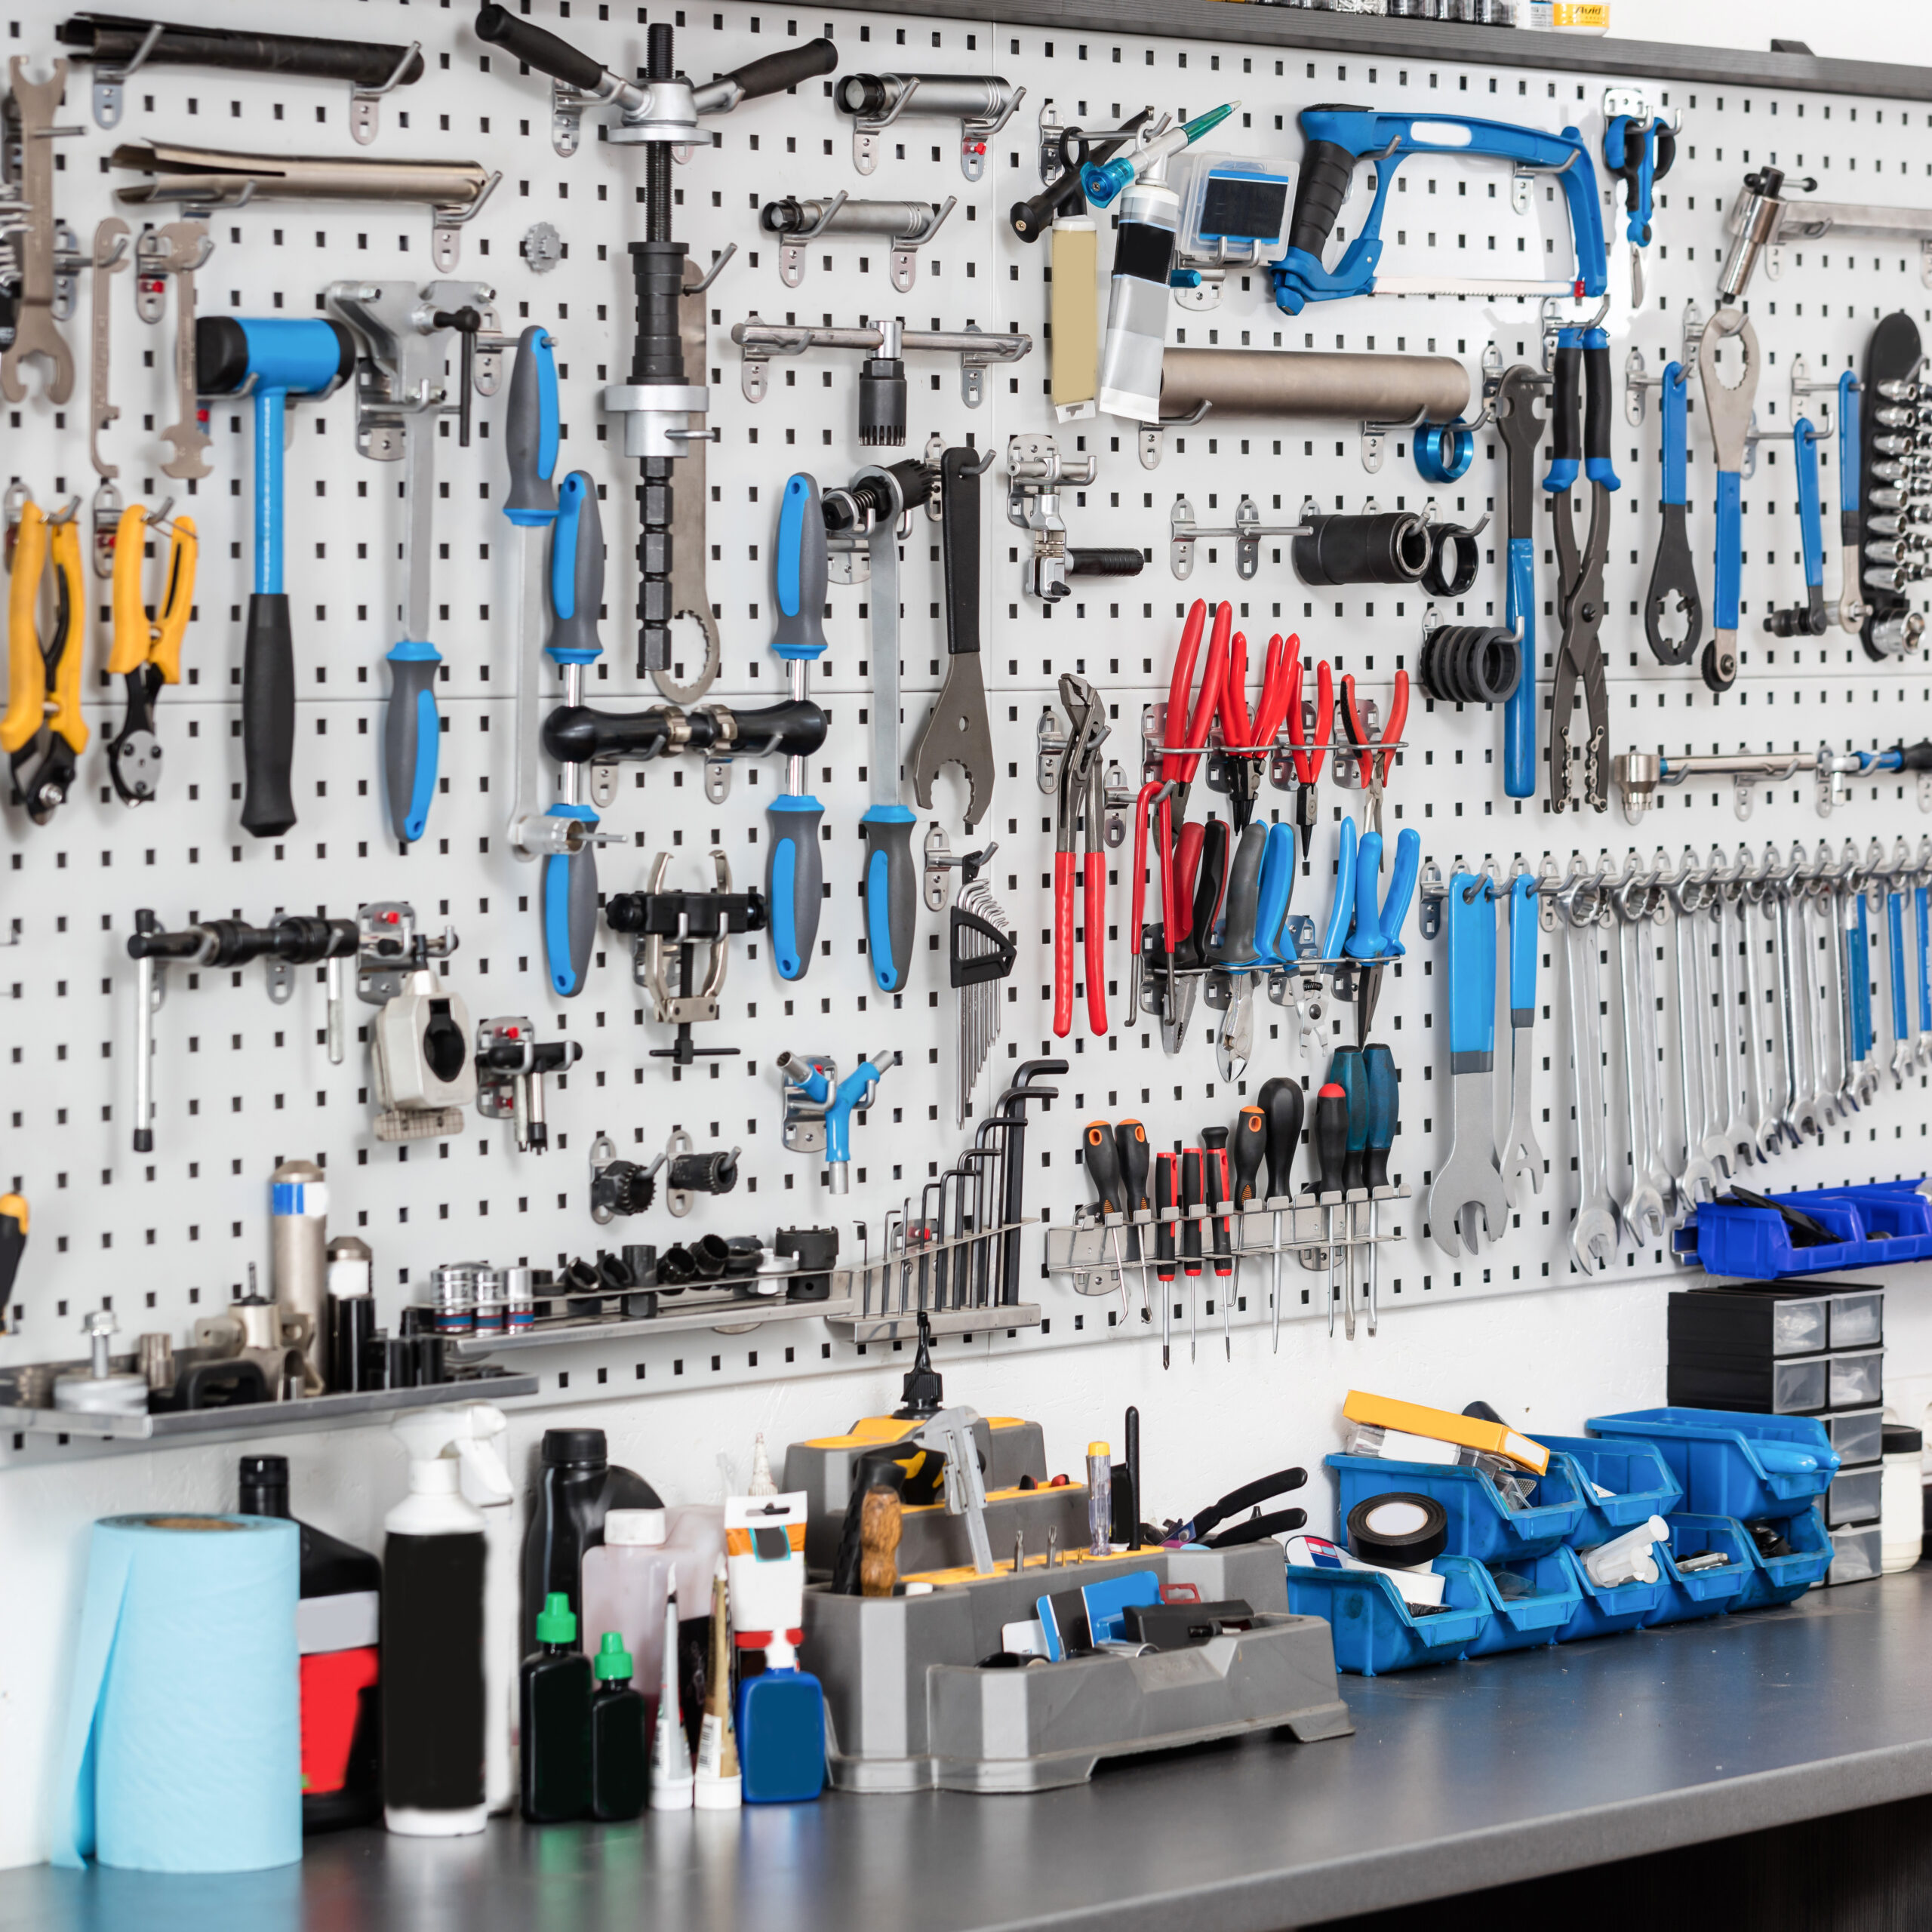 Tool магазин. Инструмент для гаража. Инструмент на стене в мастерской. Хранение инструмента в мастерской. Система хранения в мастерской.